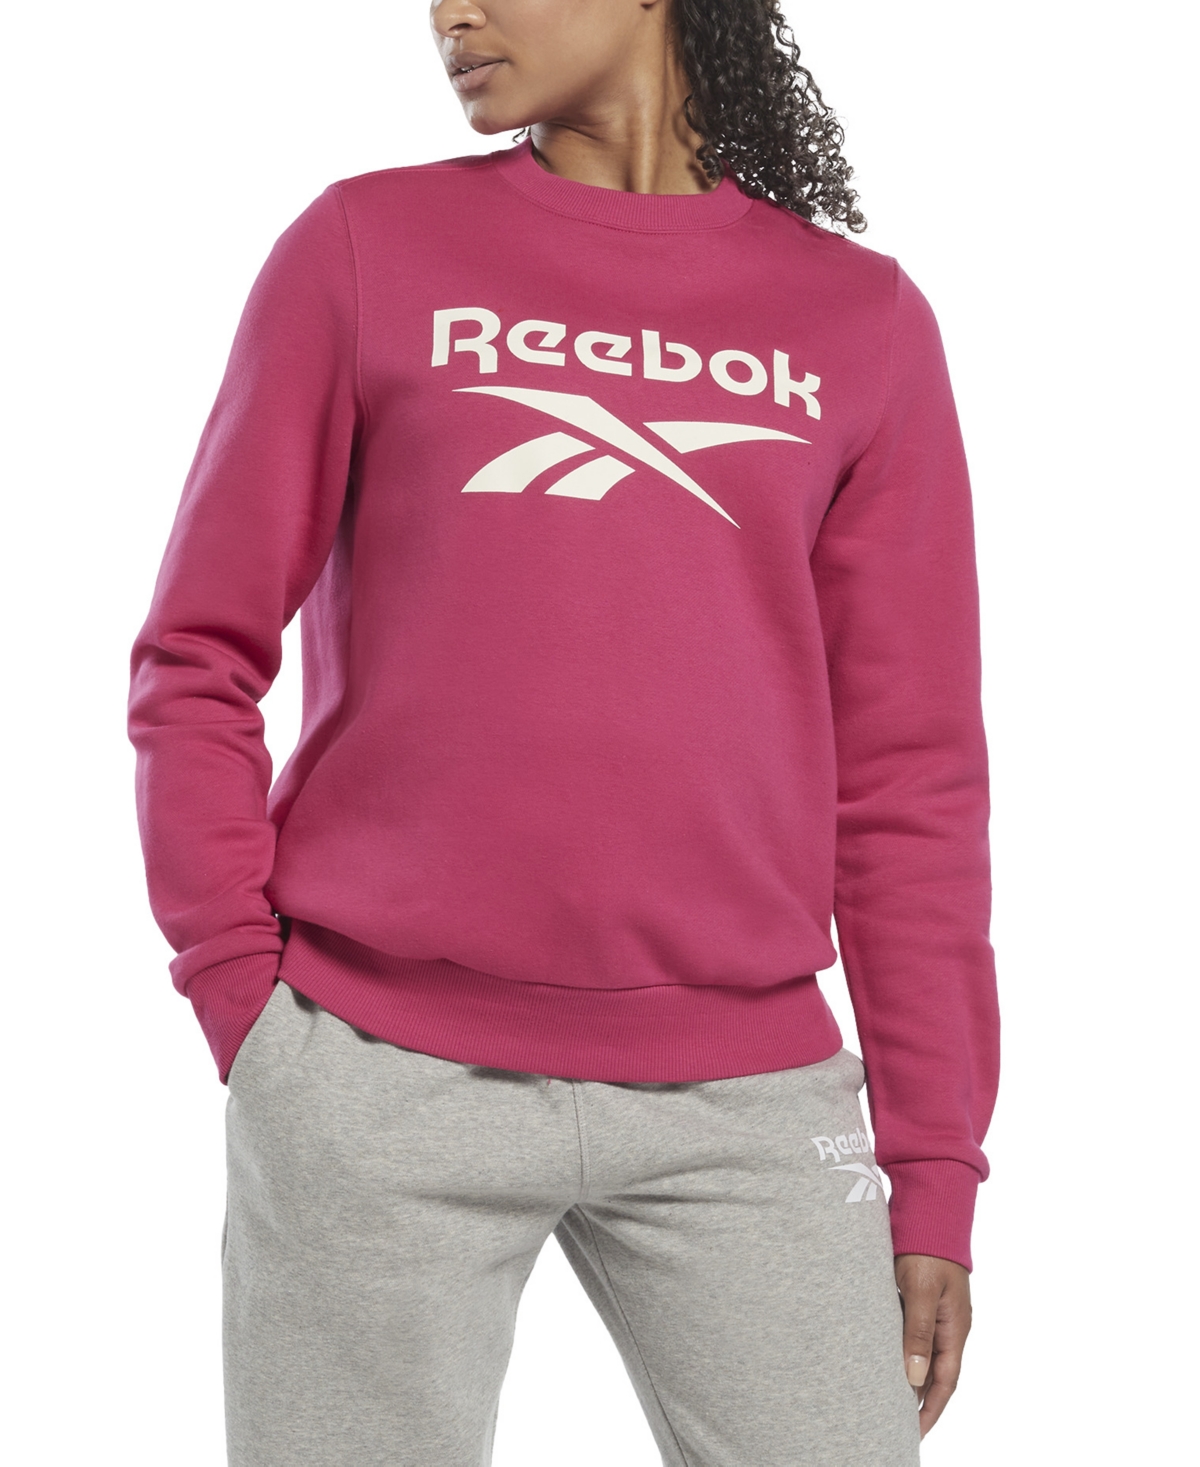  Reebok Women's Identity Logo Fleece Crew Sweatshirt